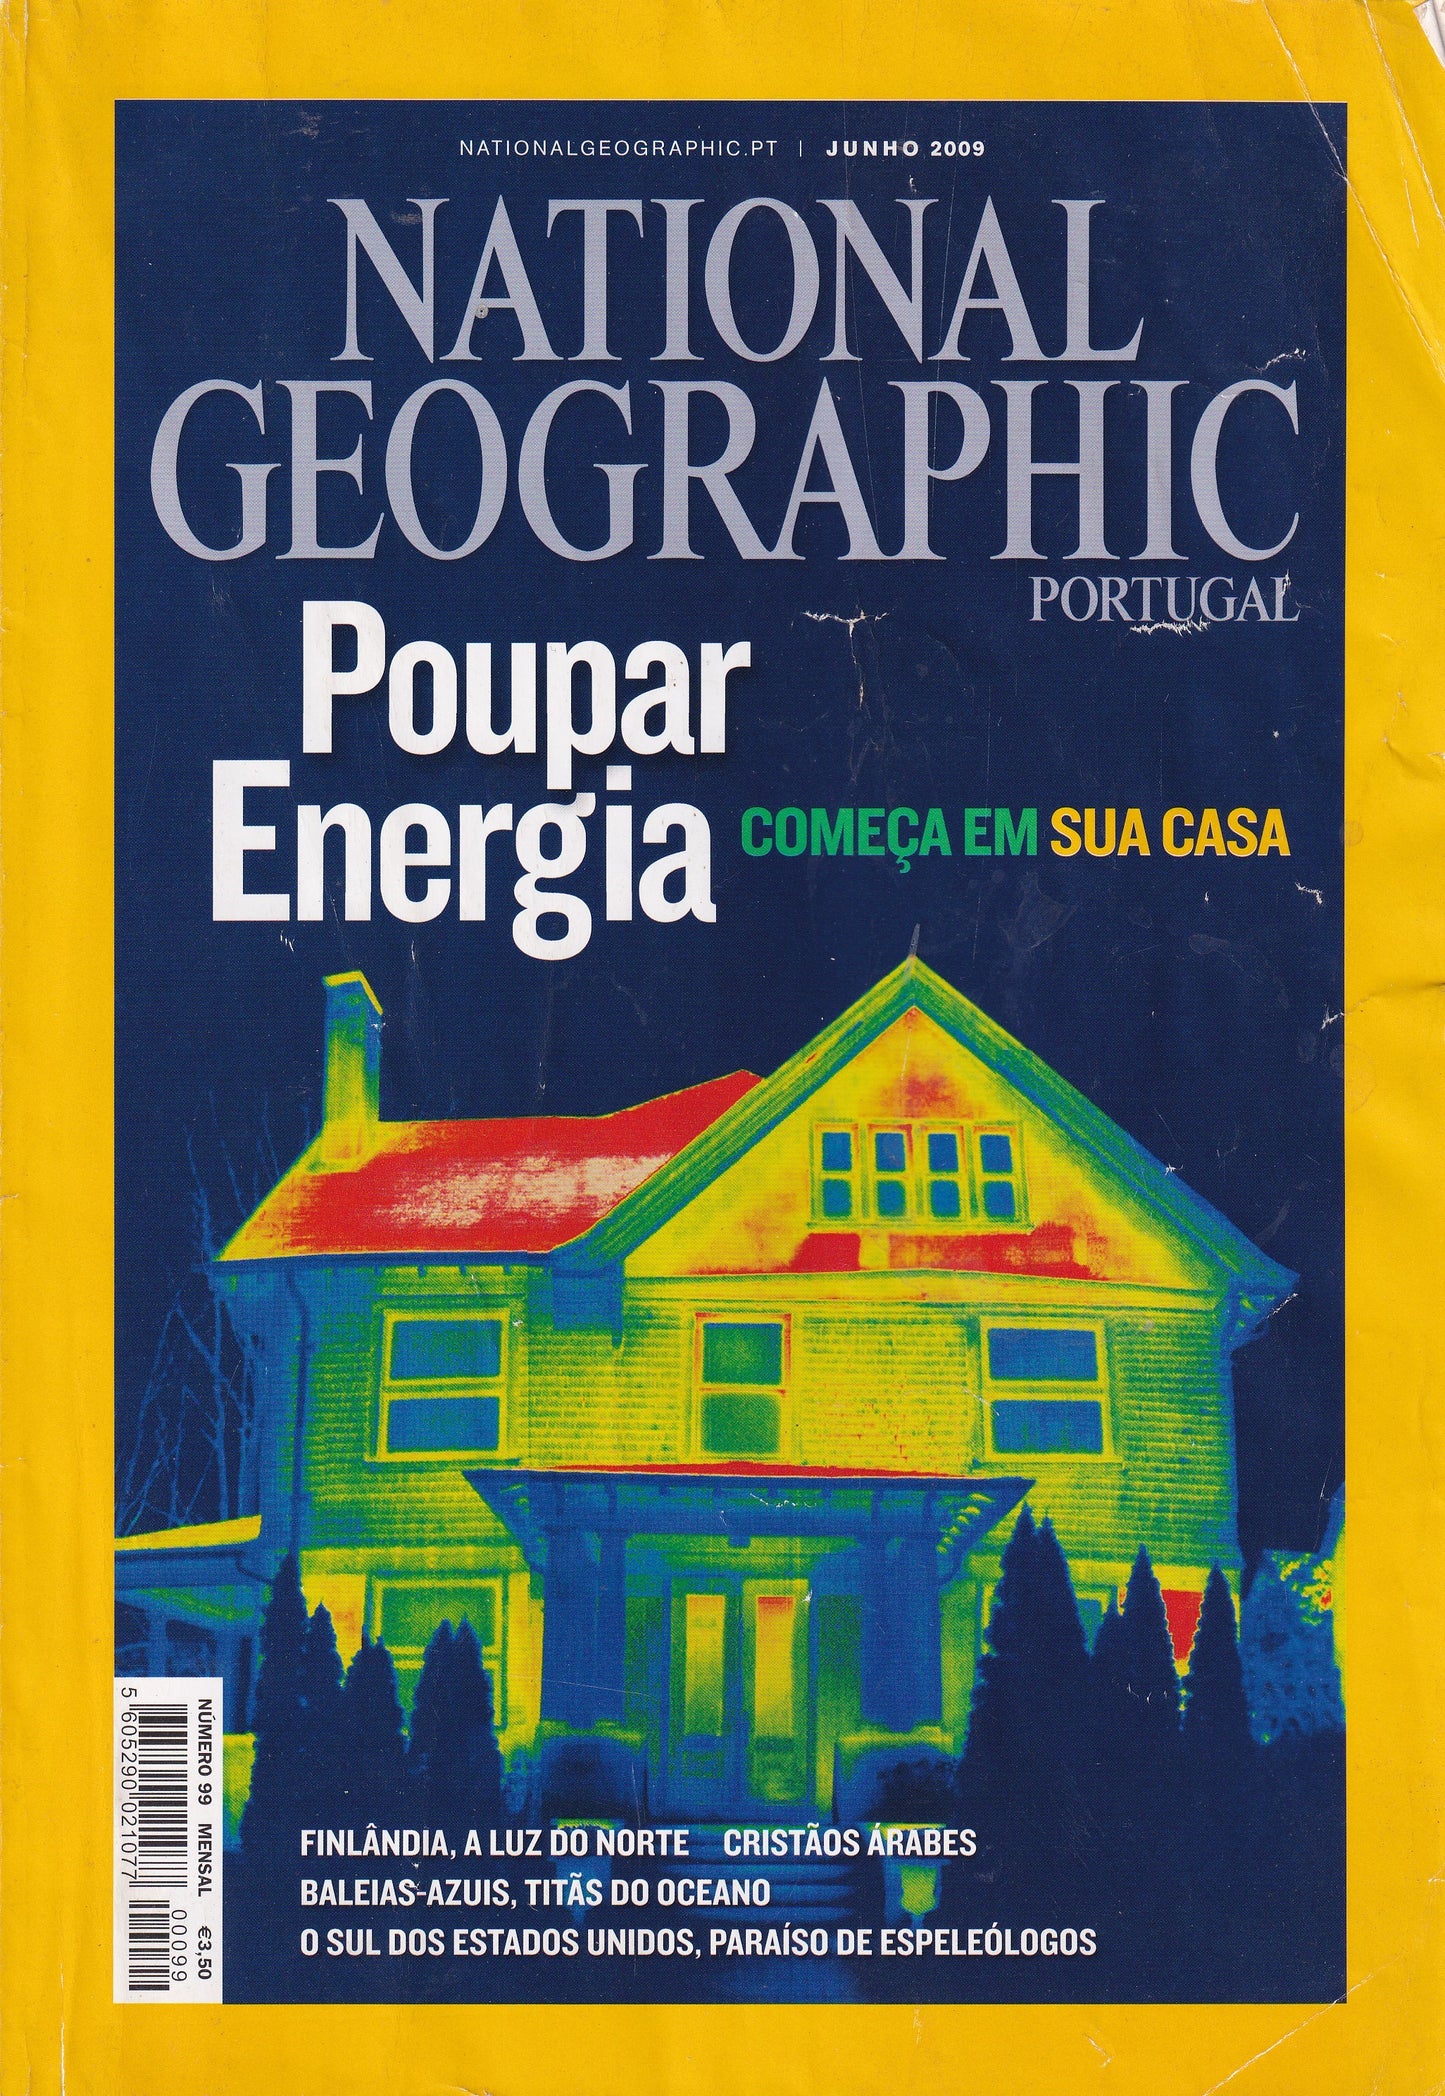 Revista National Geographic Portugal #99 (Poupar Energia) Junho.2009- USADO